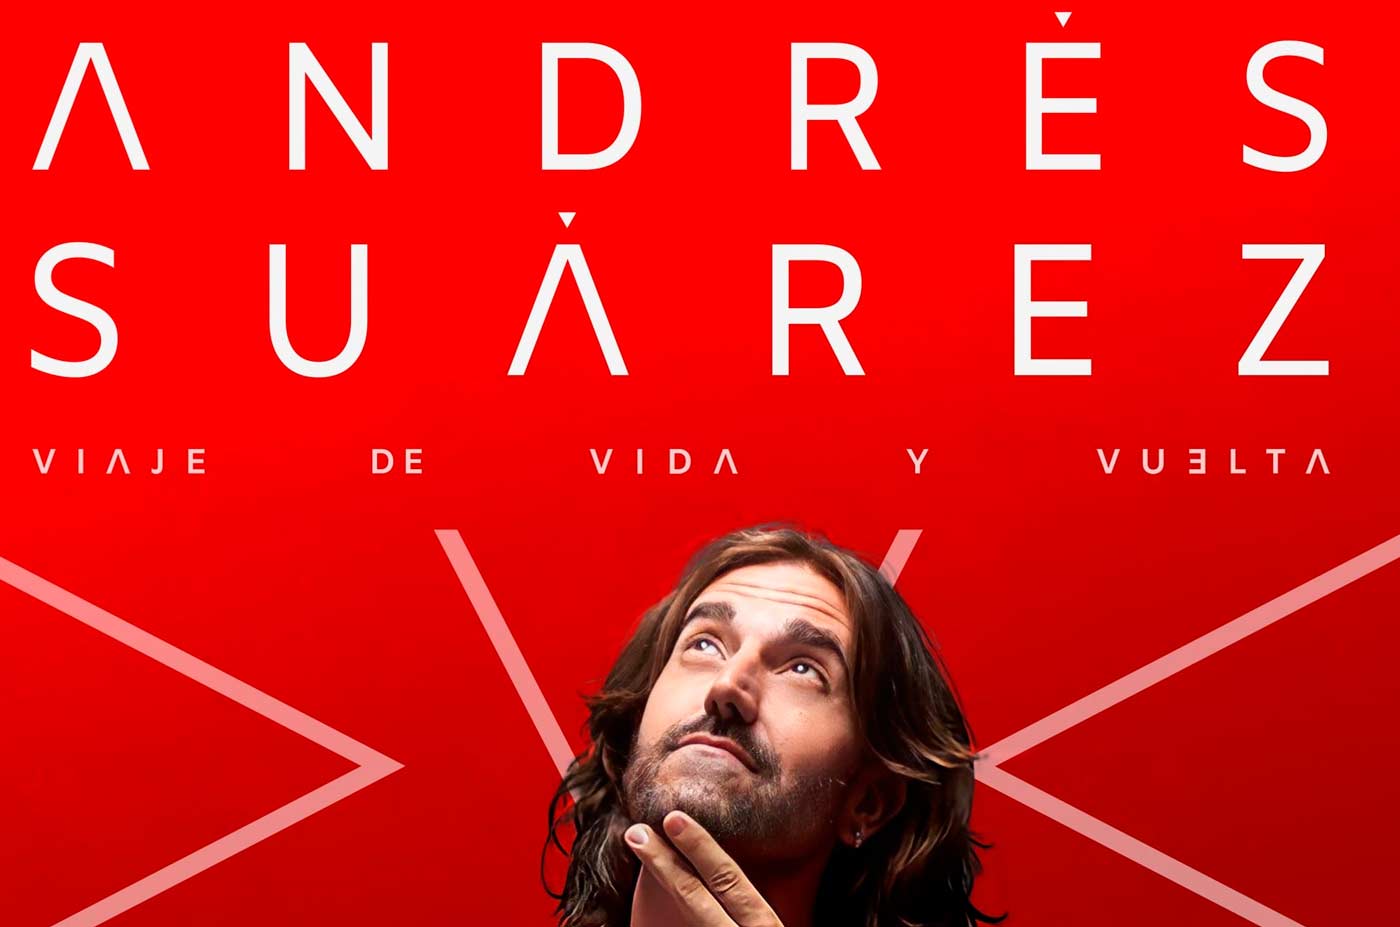 Andres Suarez viaje de ida y vuelta 29 de septiembre Gran teatro de Huelva